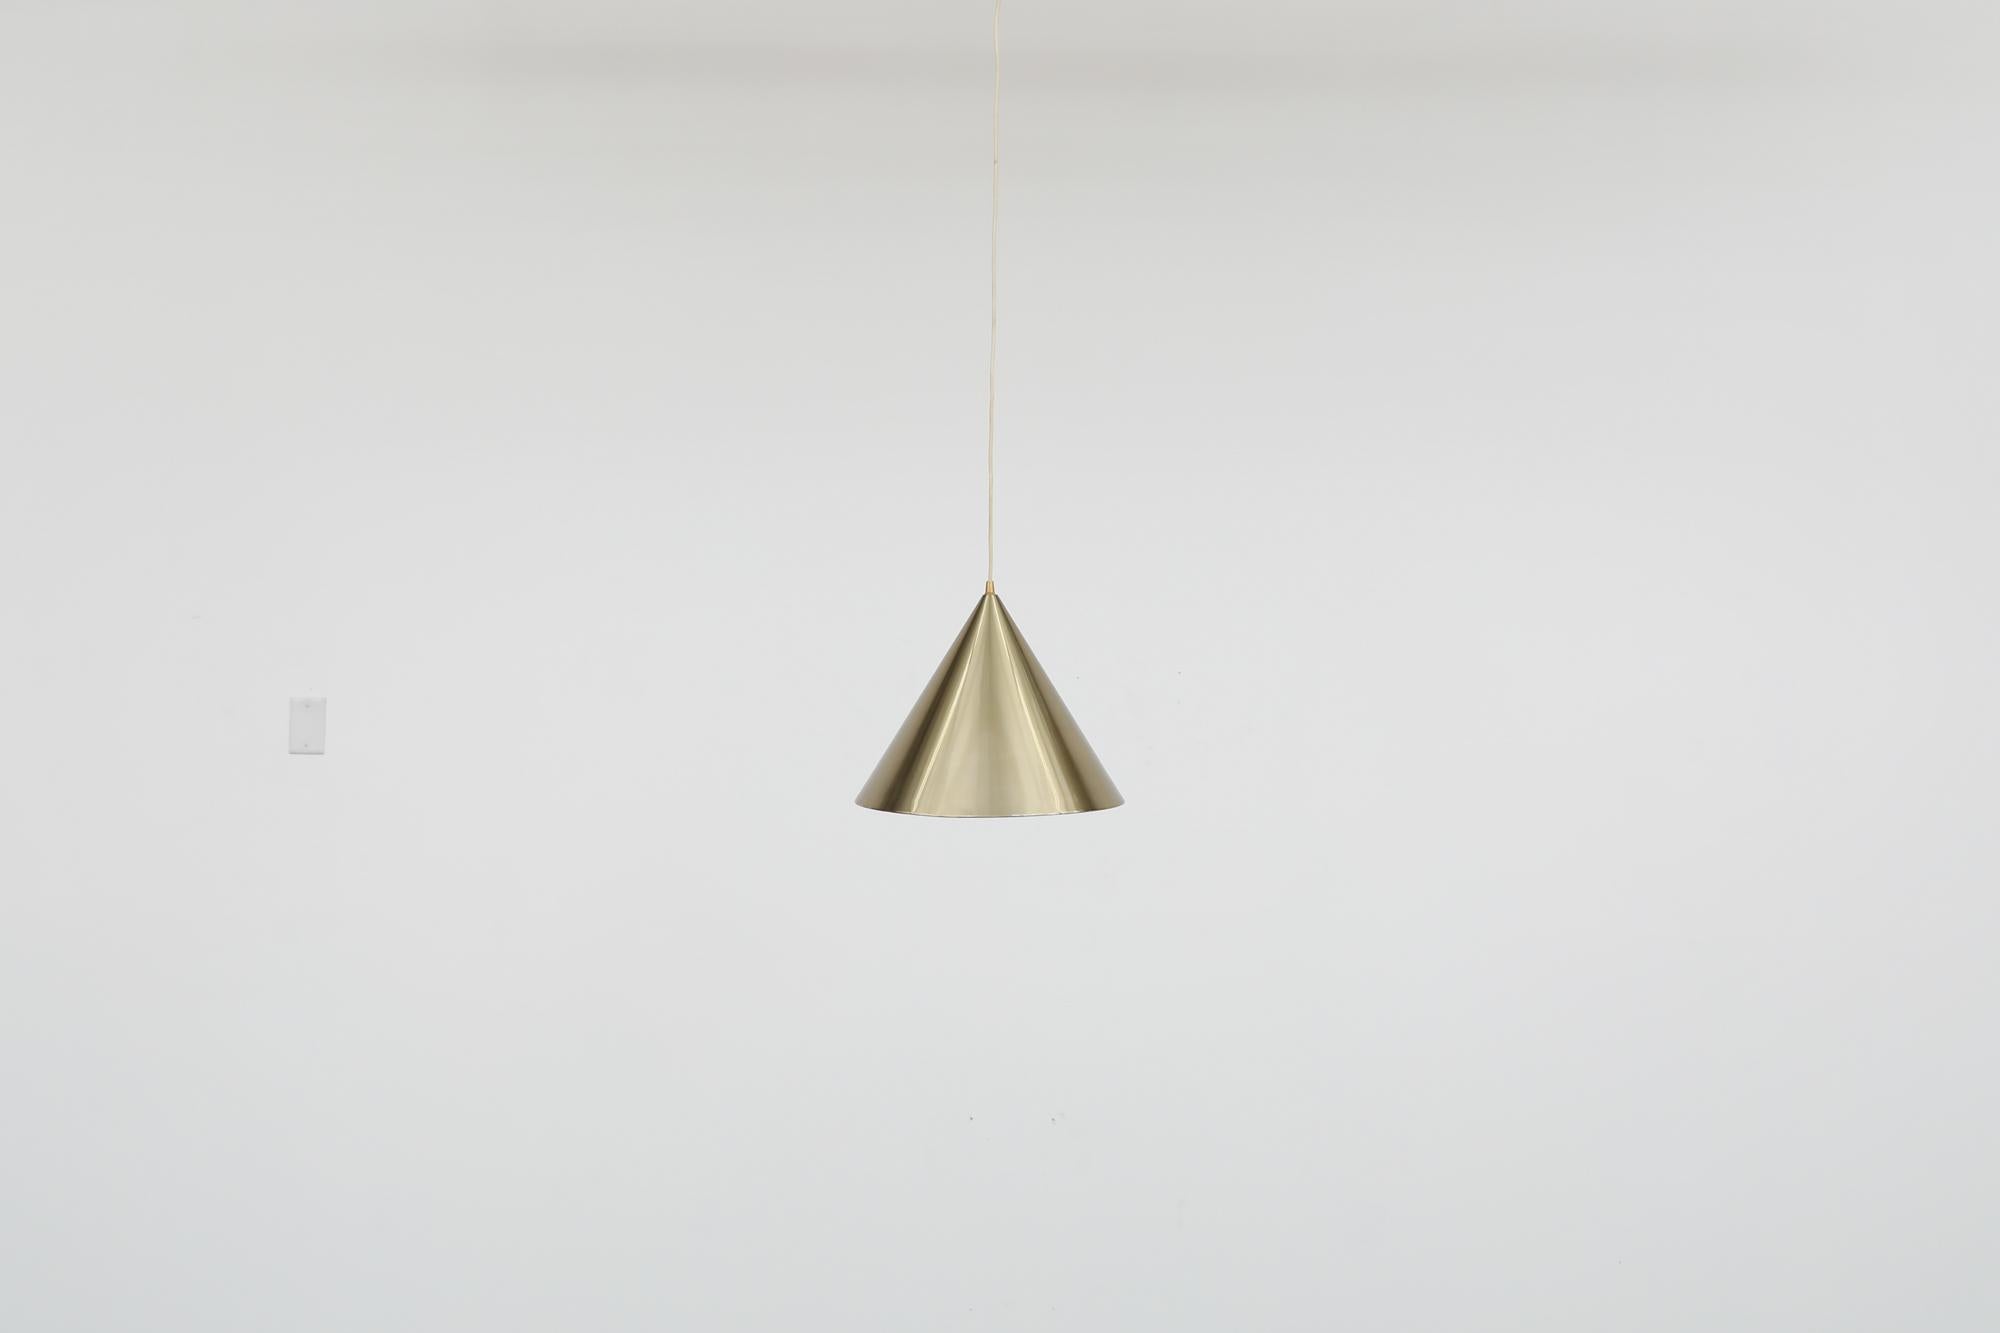 Danish 1960's ceiling pendant with gold aluminum cone. 